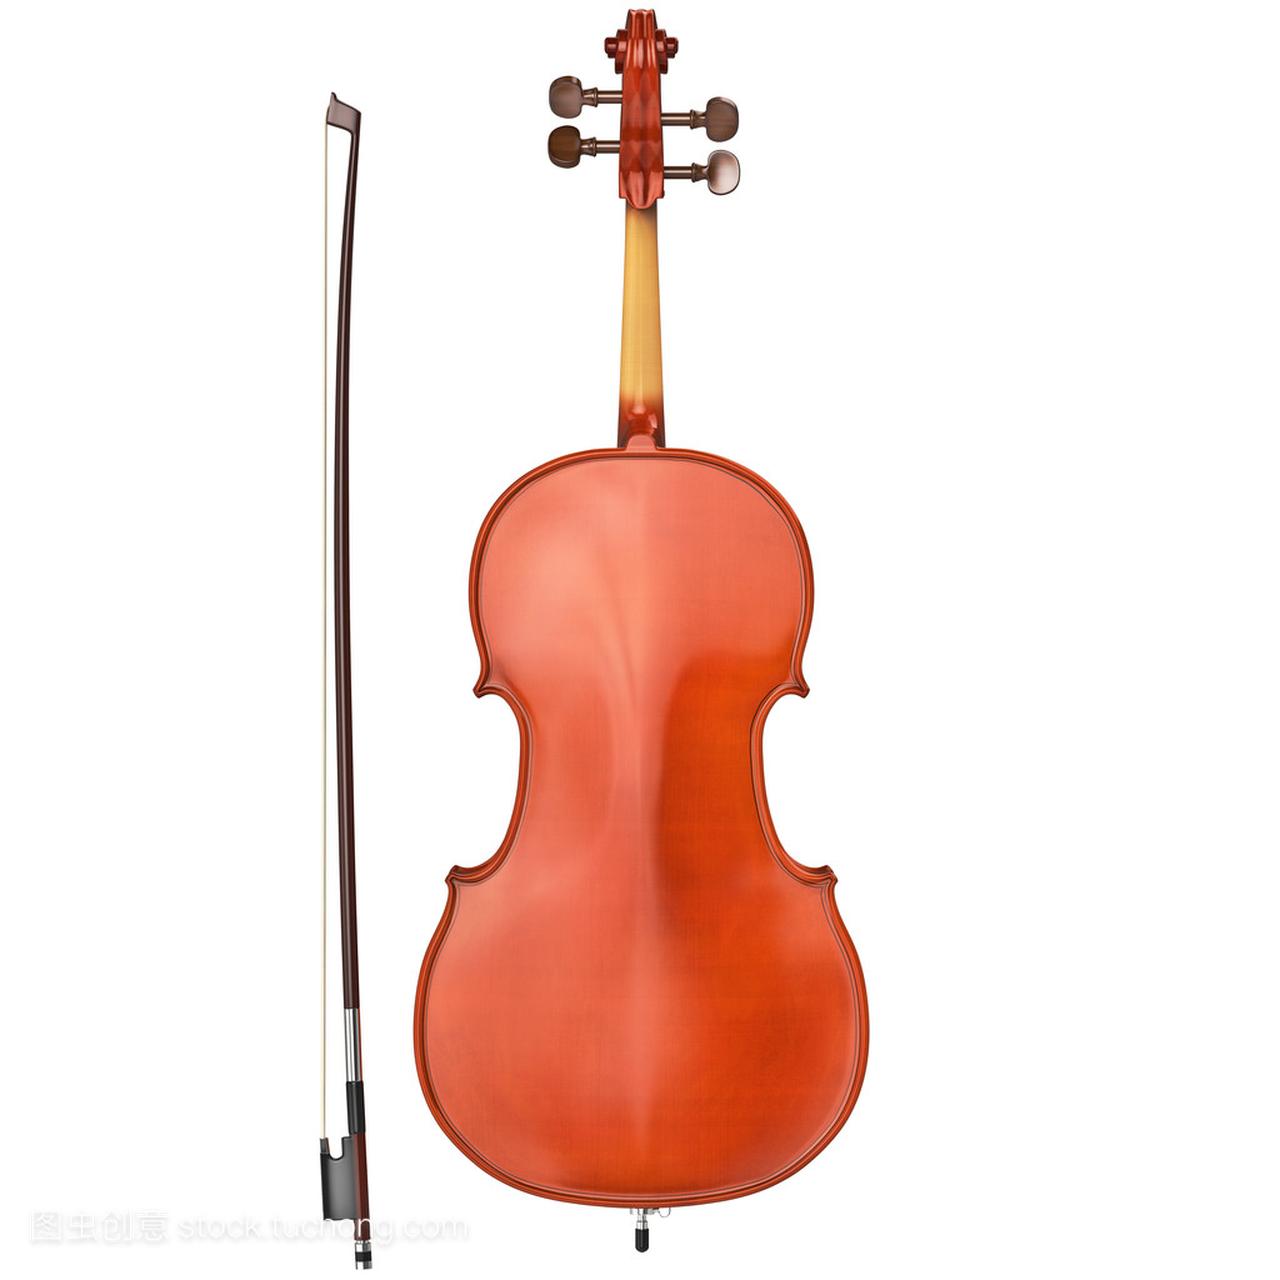 大提琴与弓后, 视图